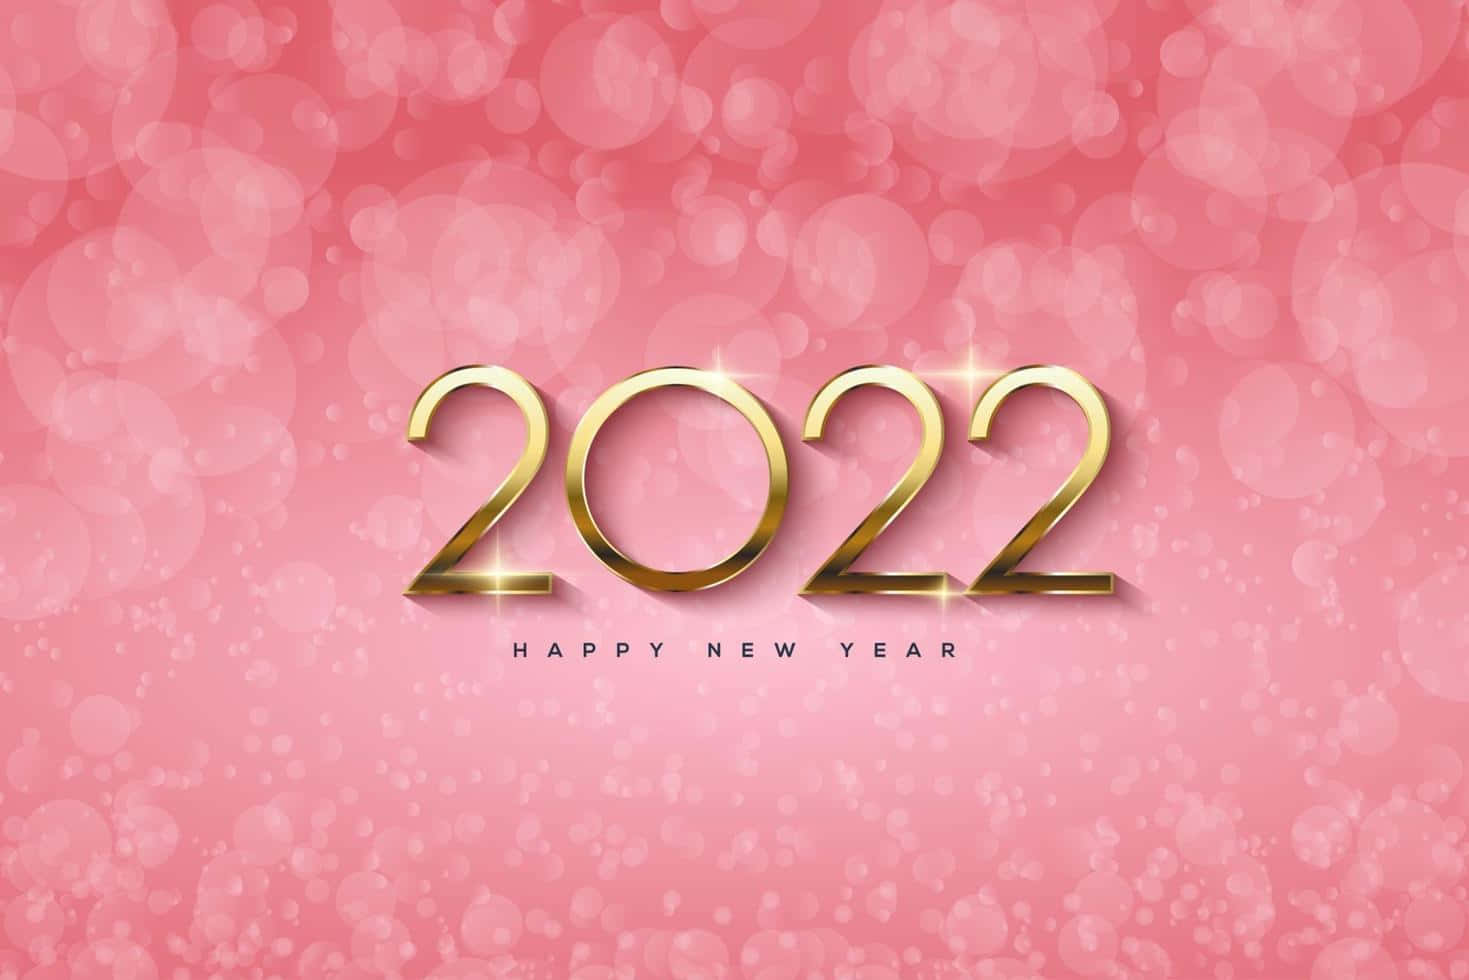 Nyt År, Nye Muligheder - 2022